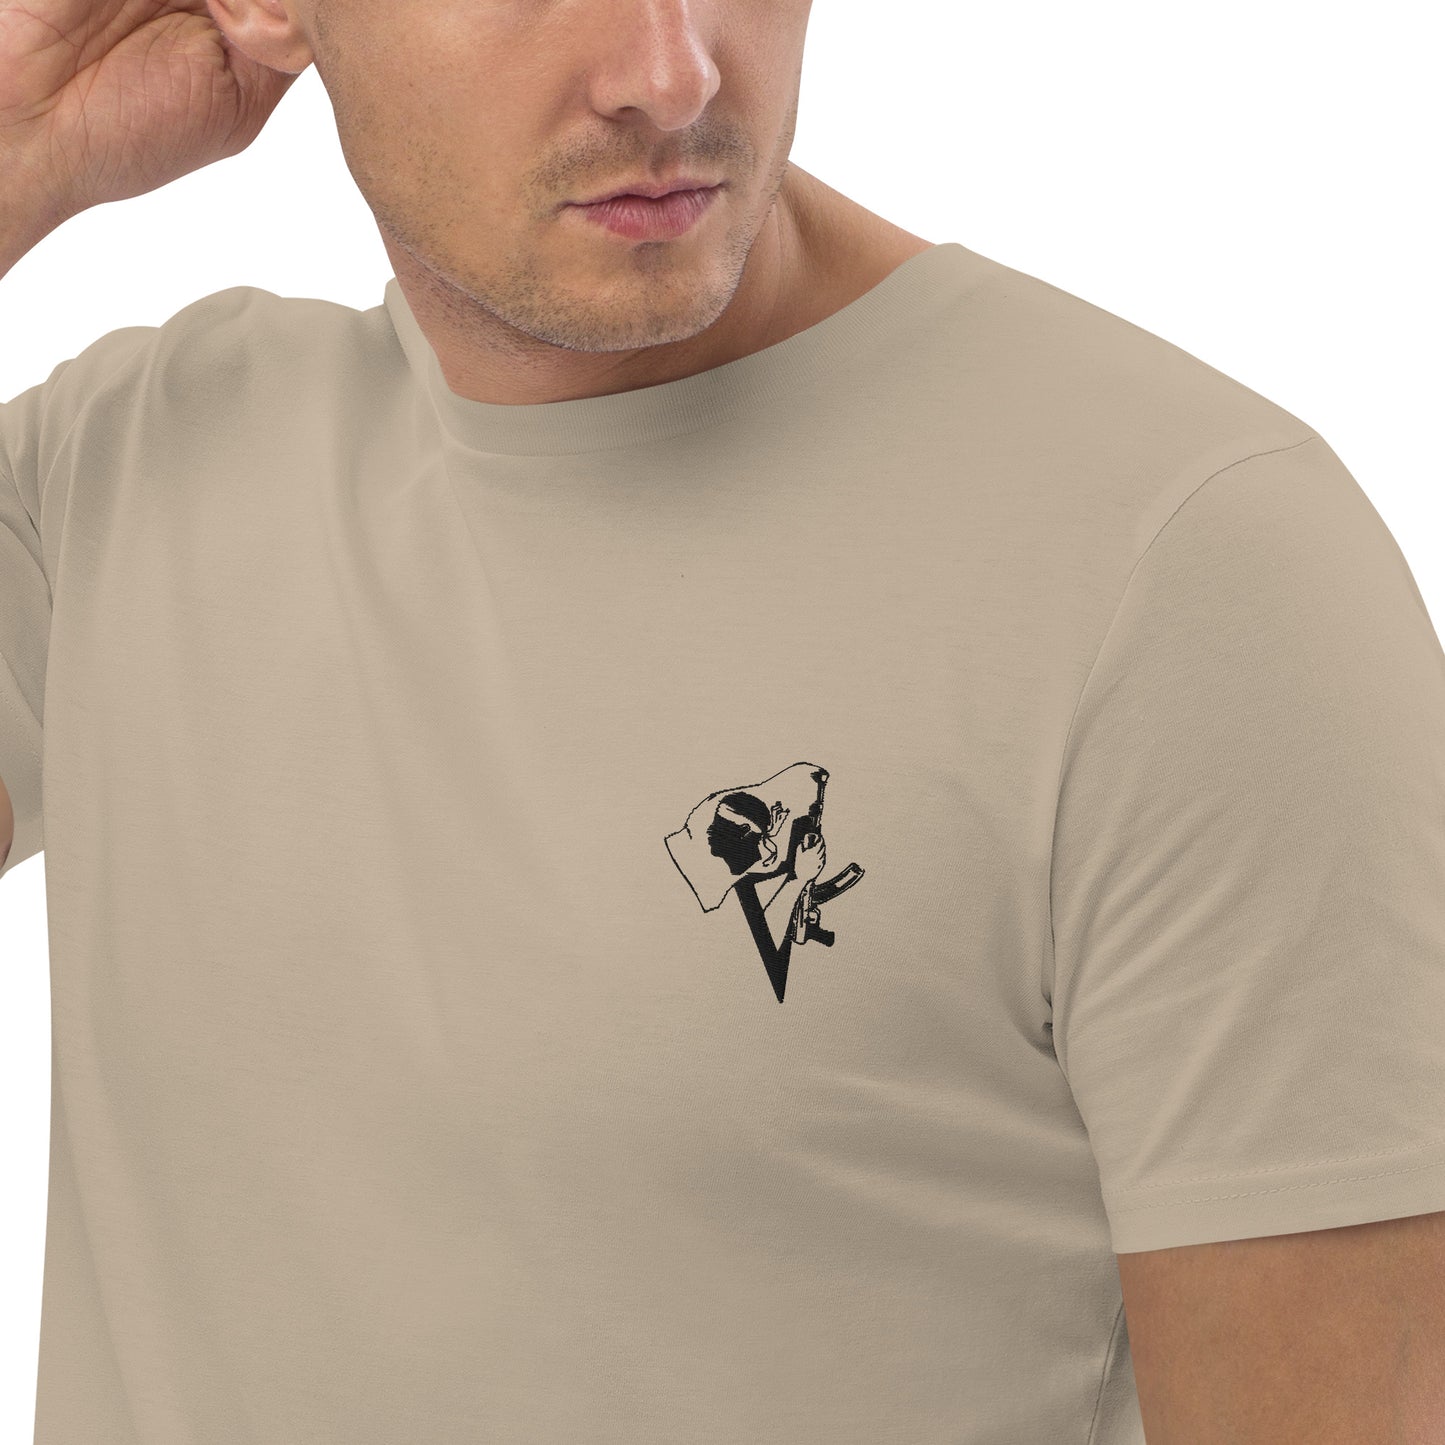 T-shirt unisexe en coton bio Bandèra - Ochju Ochju Desert Dust / S Ochju T-shirt unisexe en coton bio Bandèra